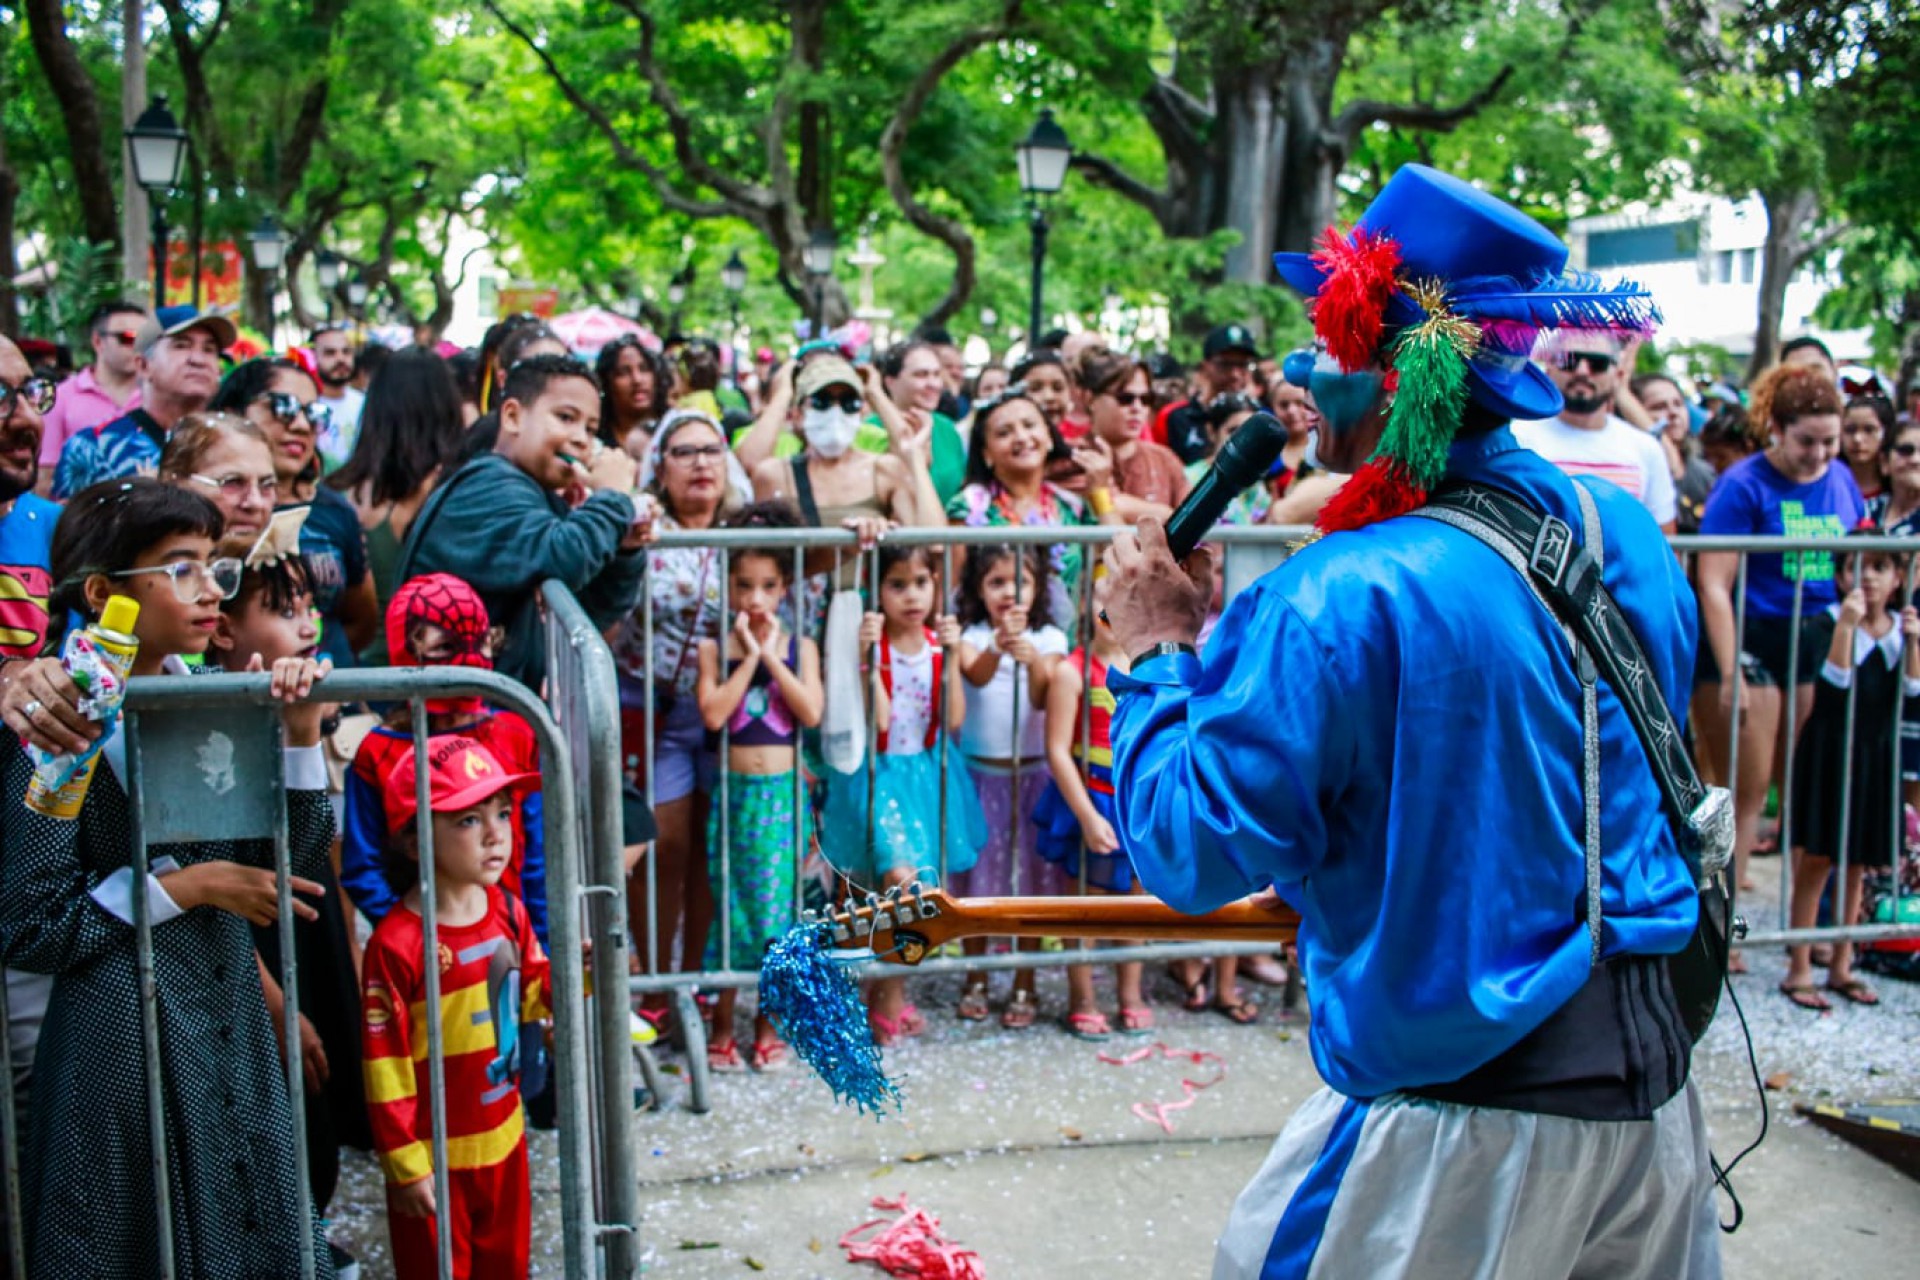 Último dia de Carnaval infantil no Passeio Público nesta terça-feira, 21  (Foto: FERNANDA BARROS)